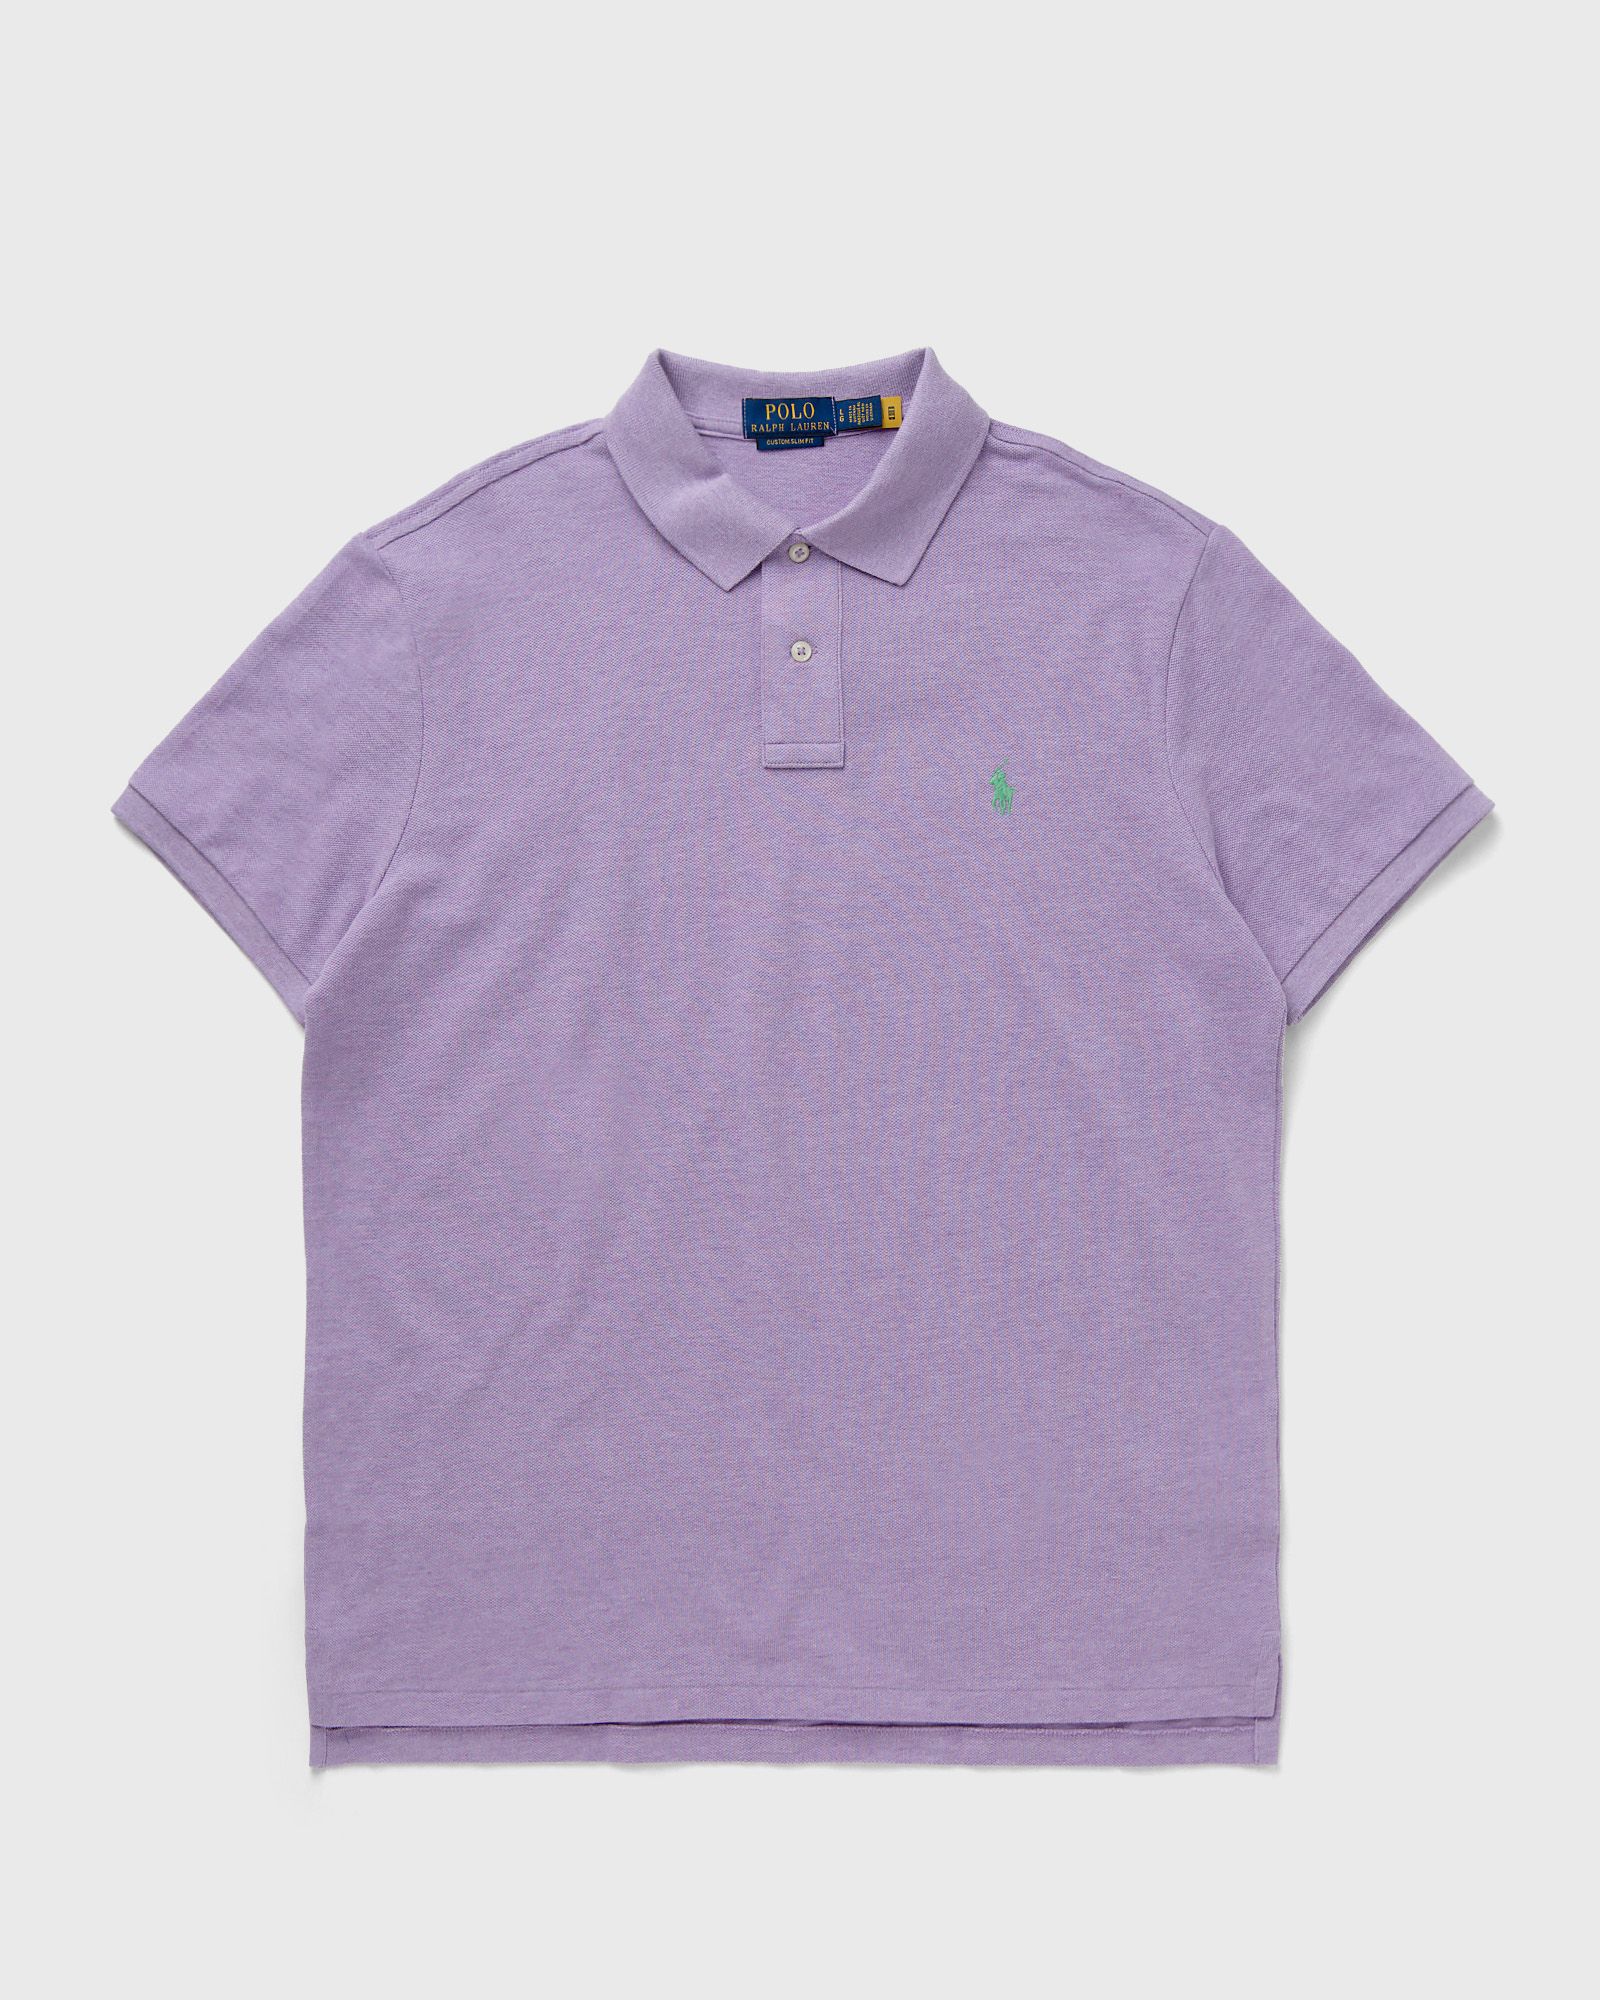 Polo Ralph Lauren - short sleeve-knit men polos purple in größe:xl